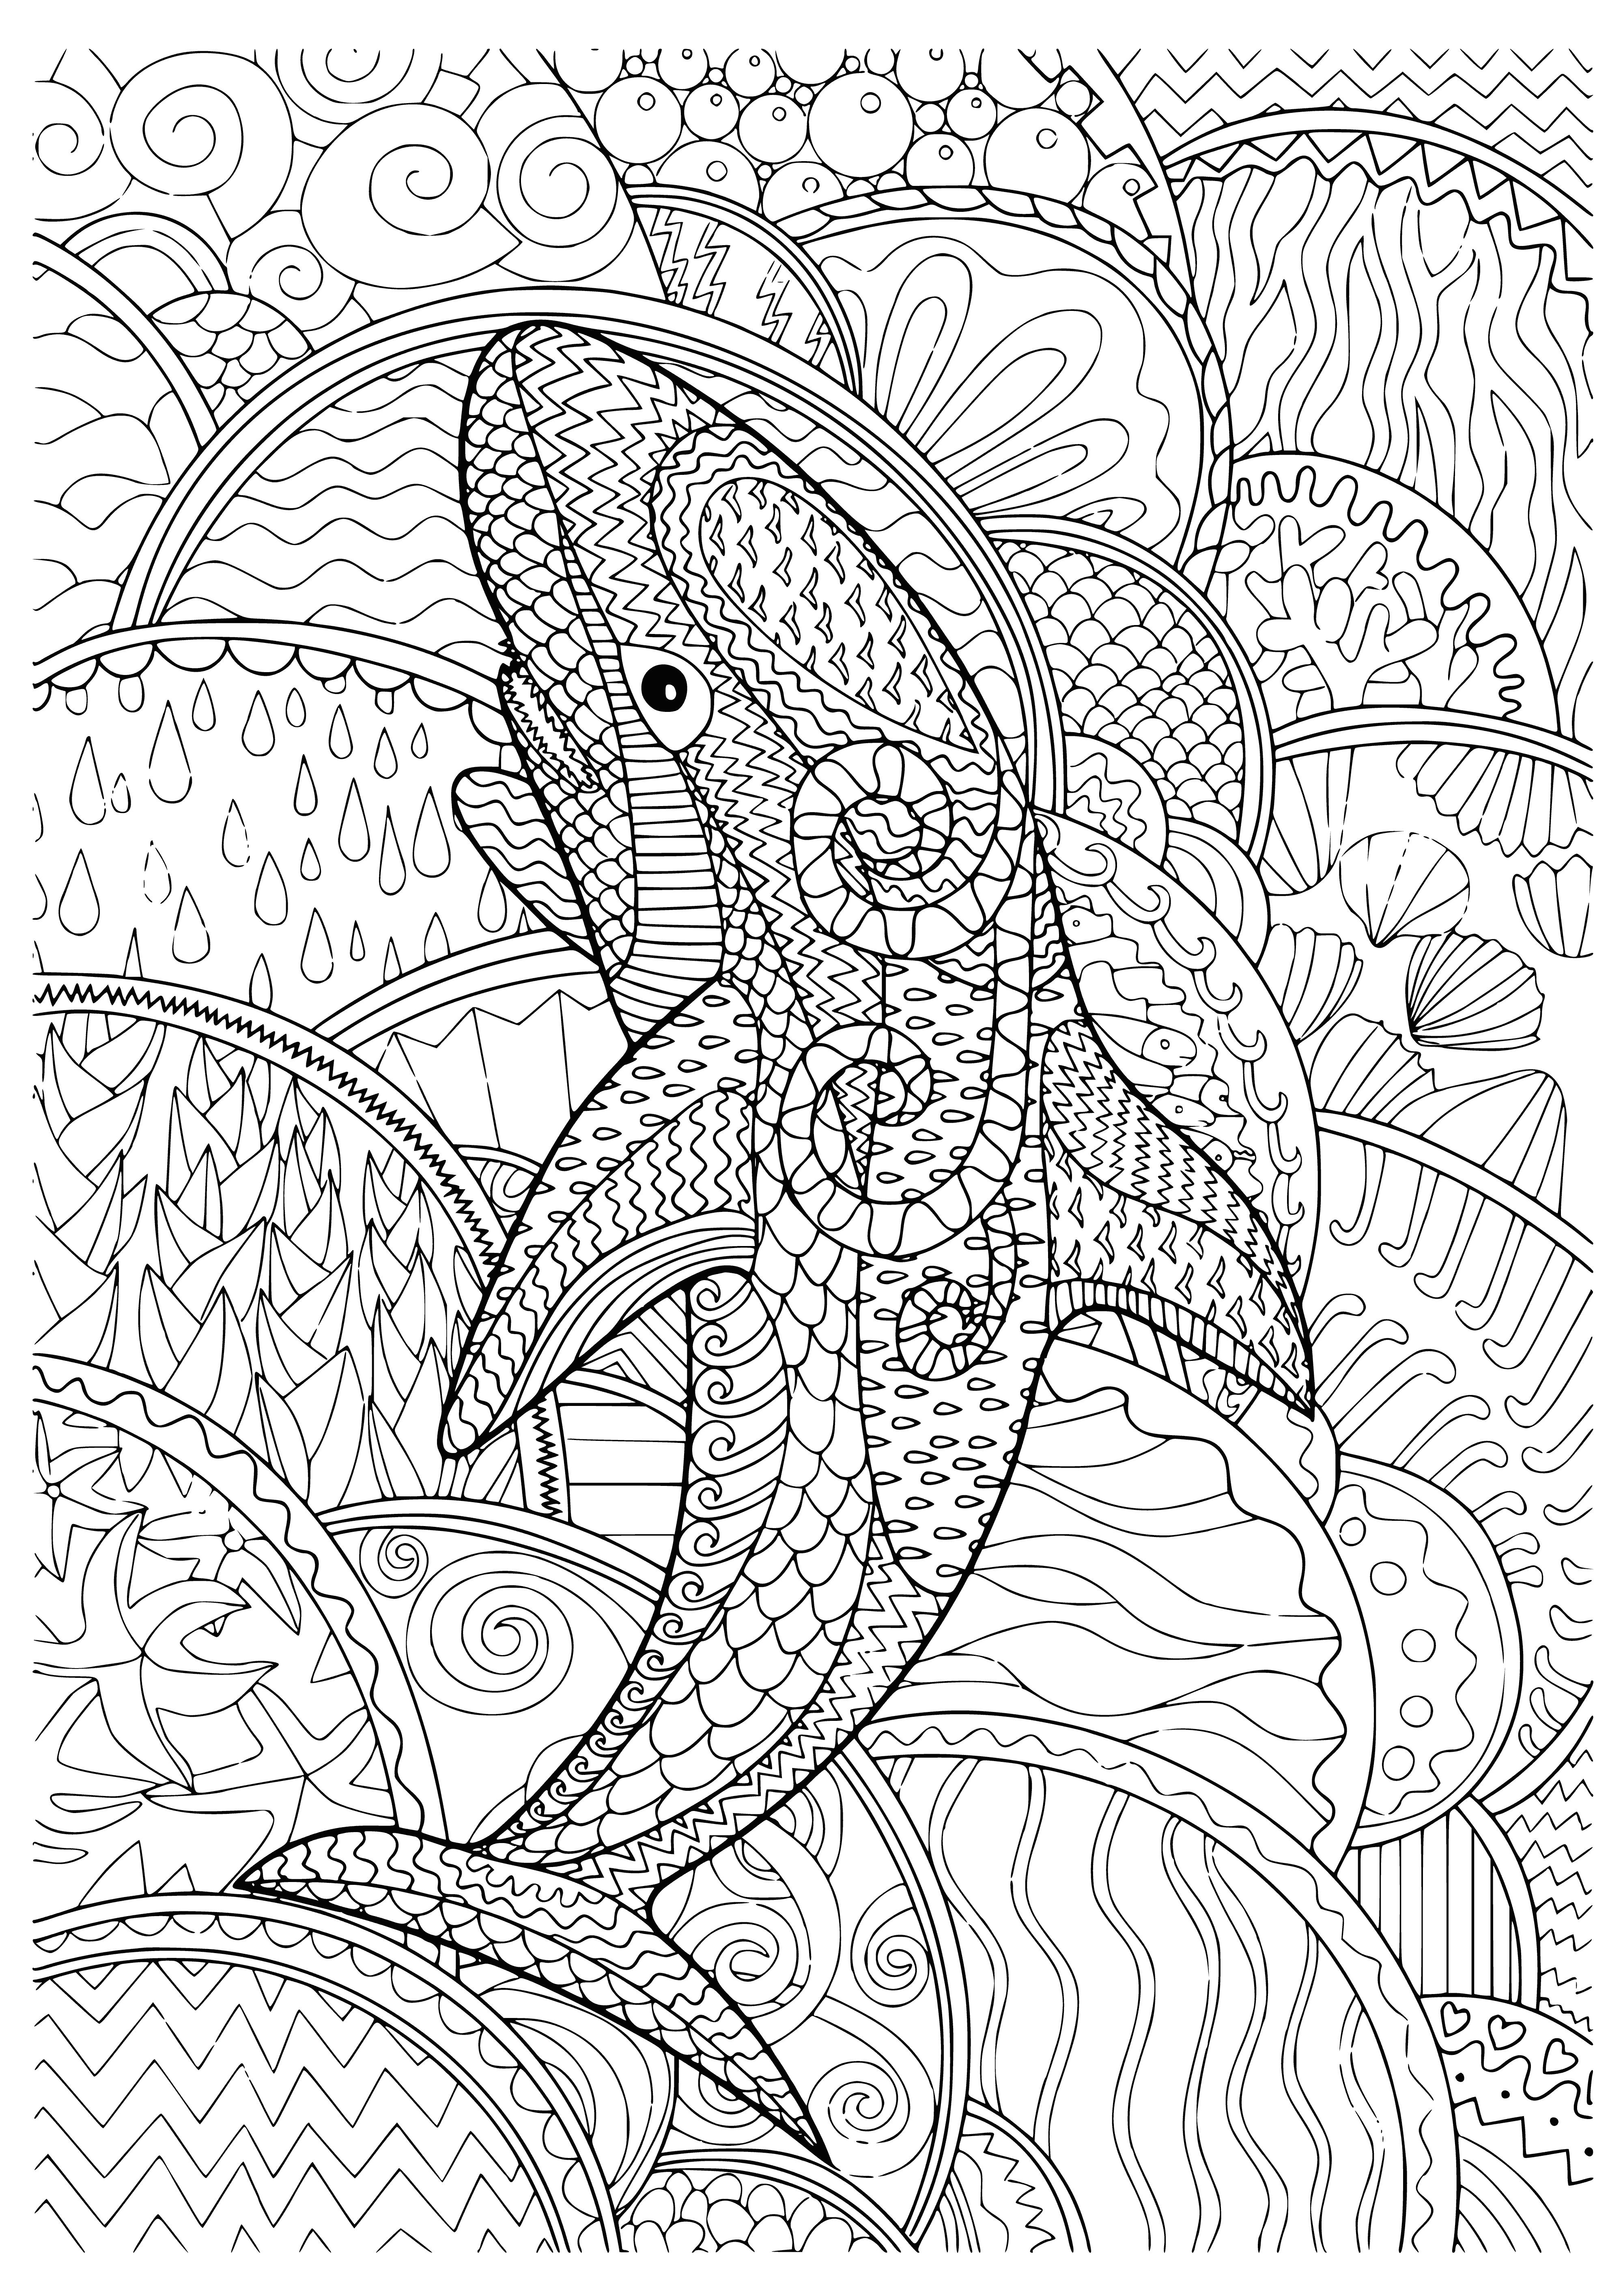 Rekin kolorowanka